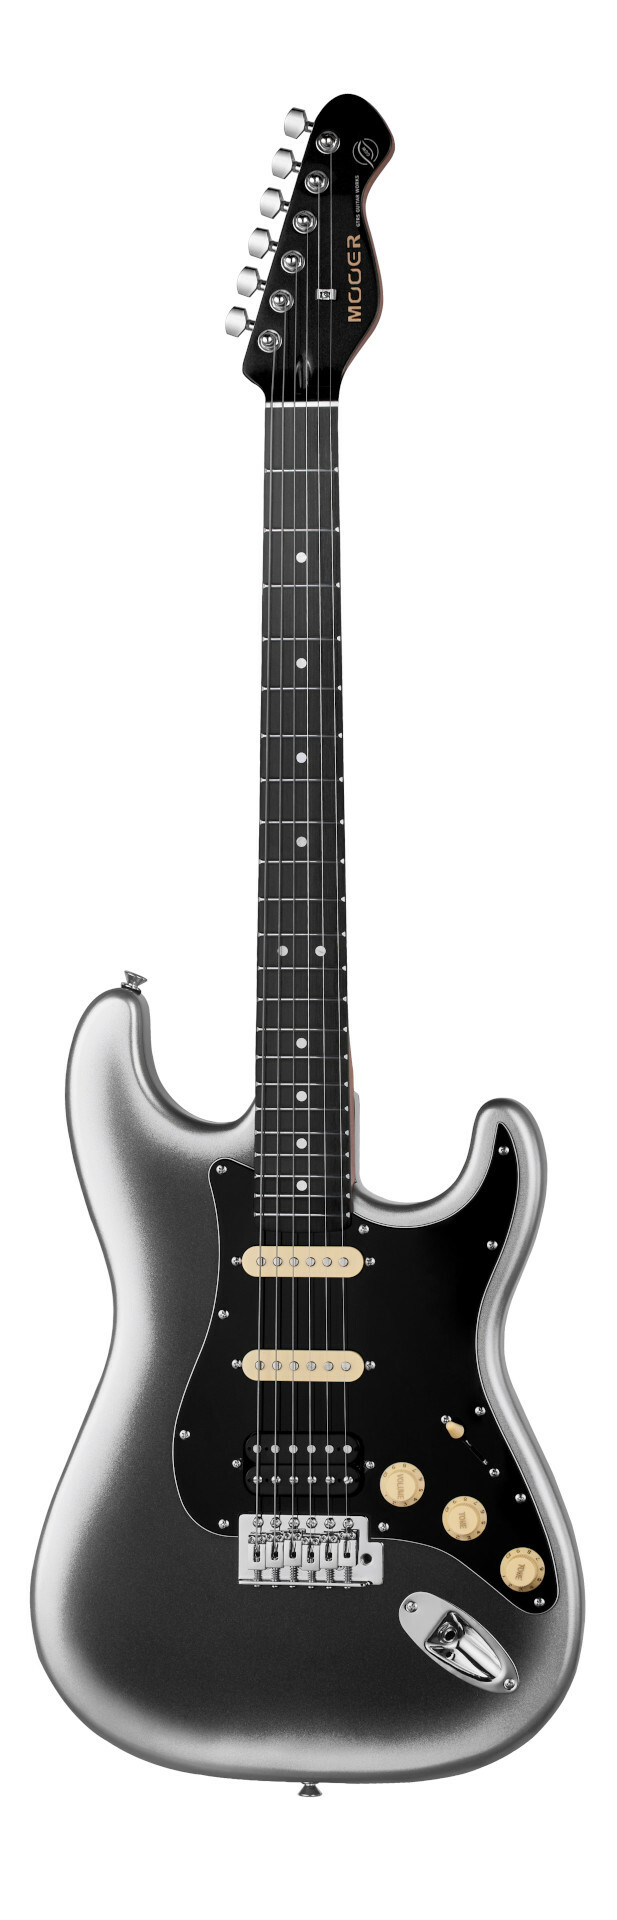 Mooer MSC10 Pro Guitar - Dark Silver